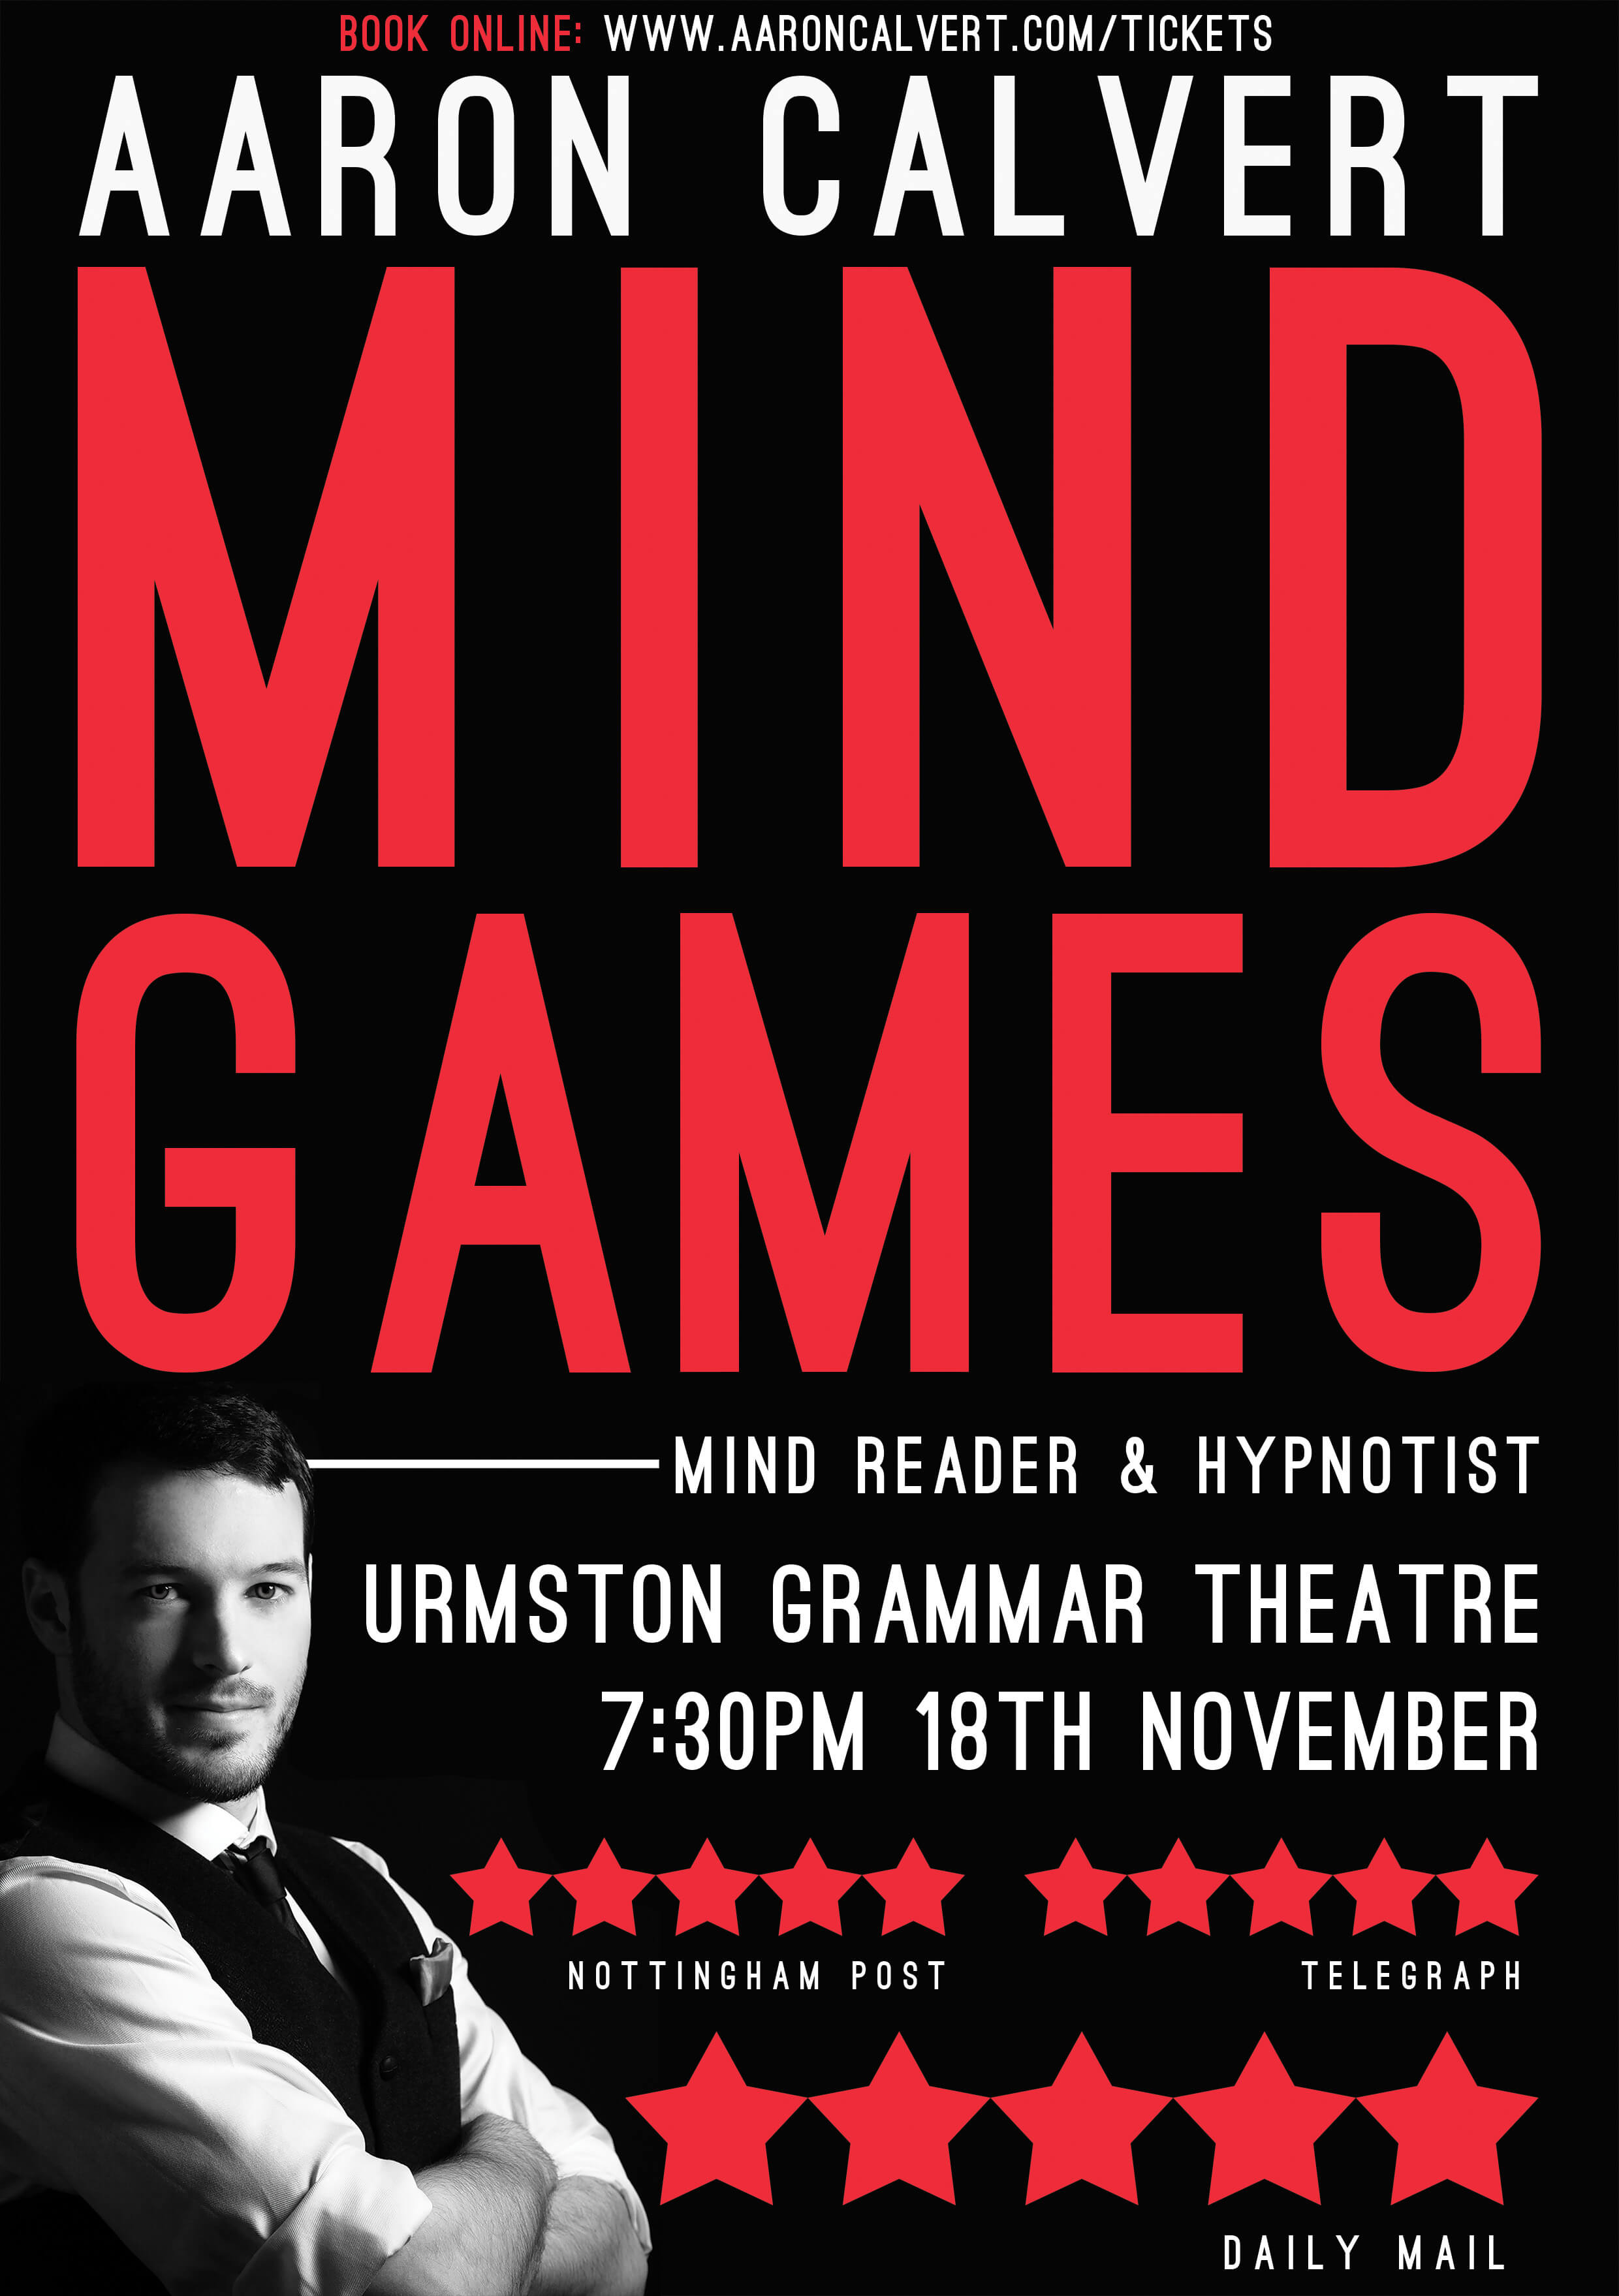 Poster of Aaron Calvert Mind Games from the Edinburgh Fringe festival